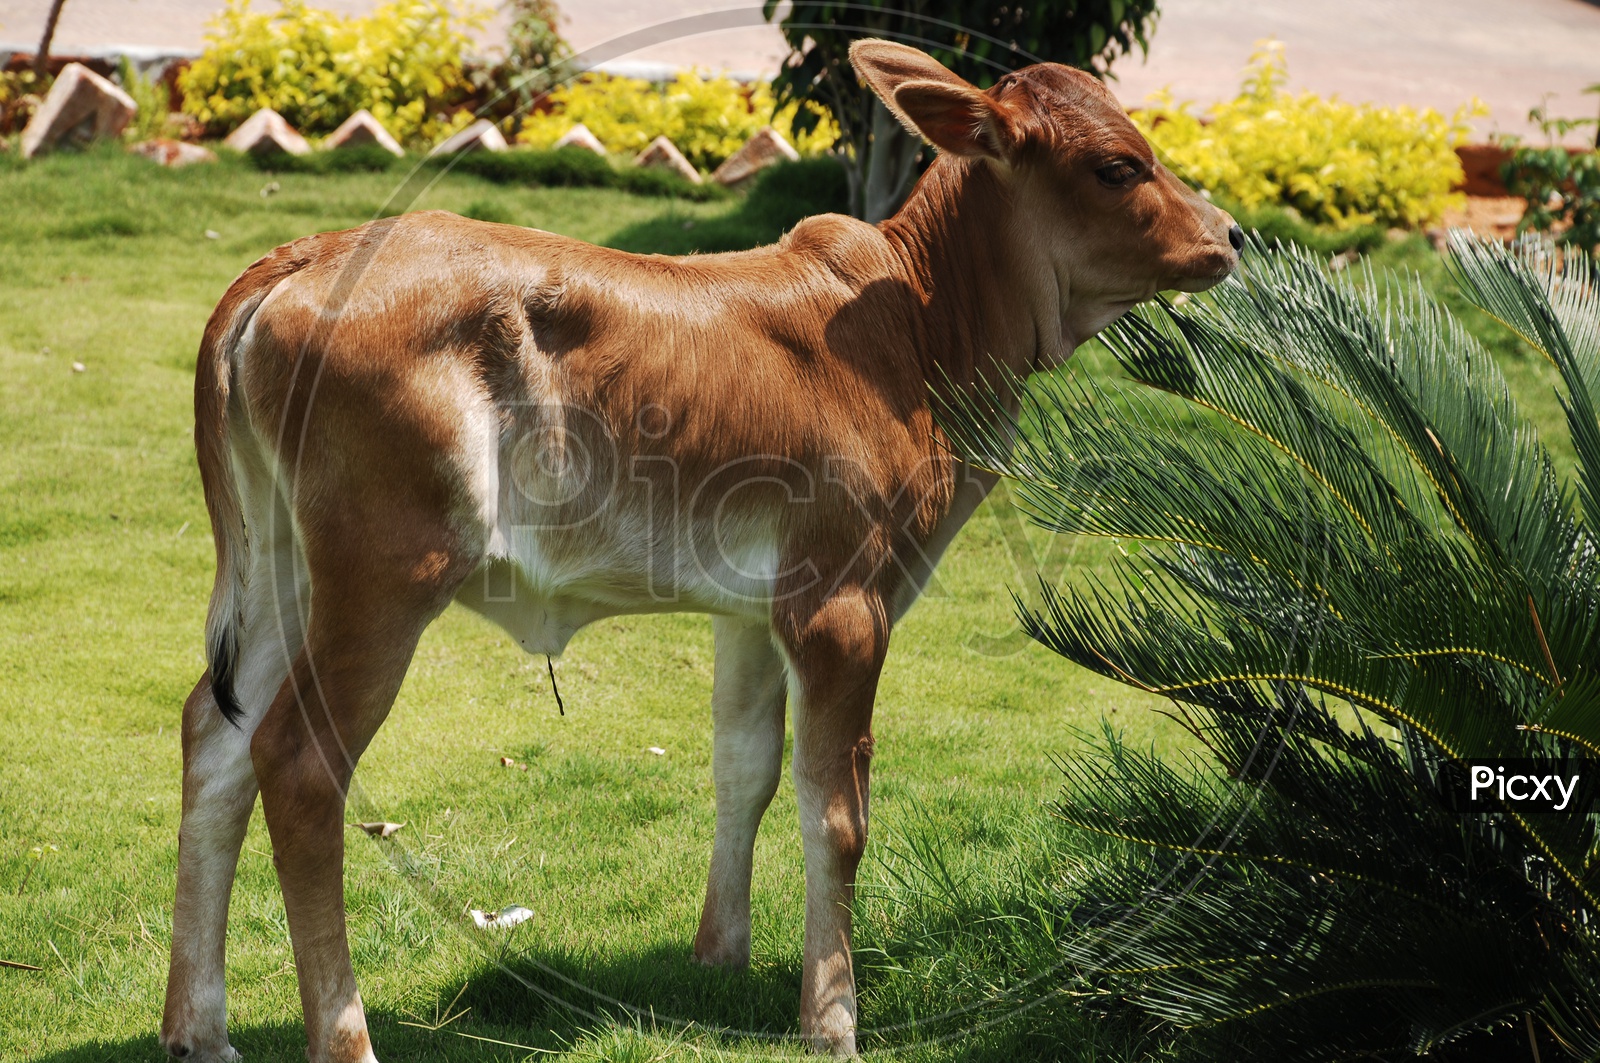 A baby Calf in a Garden